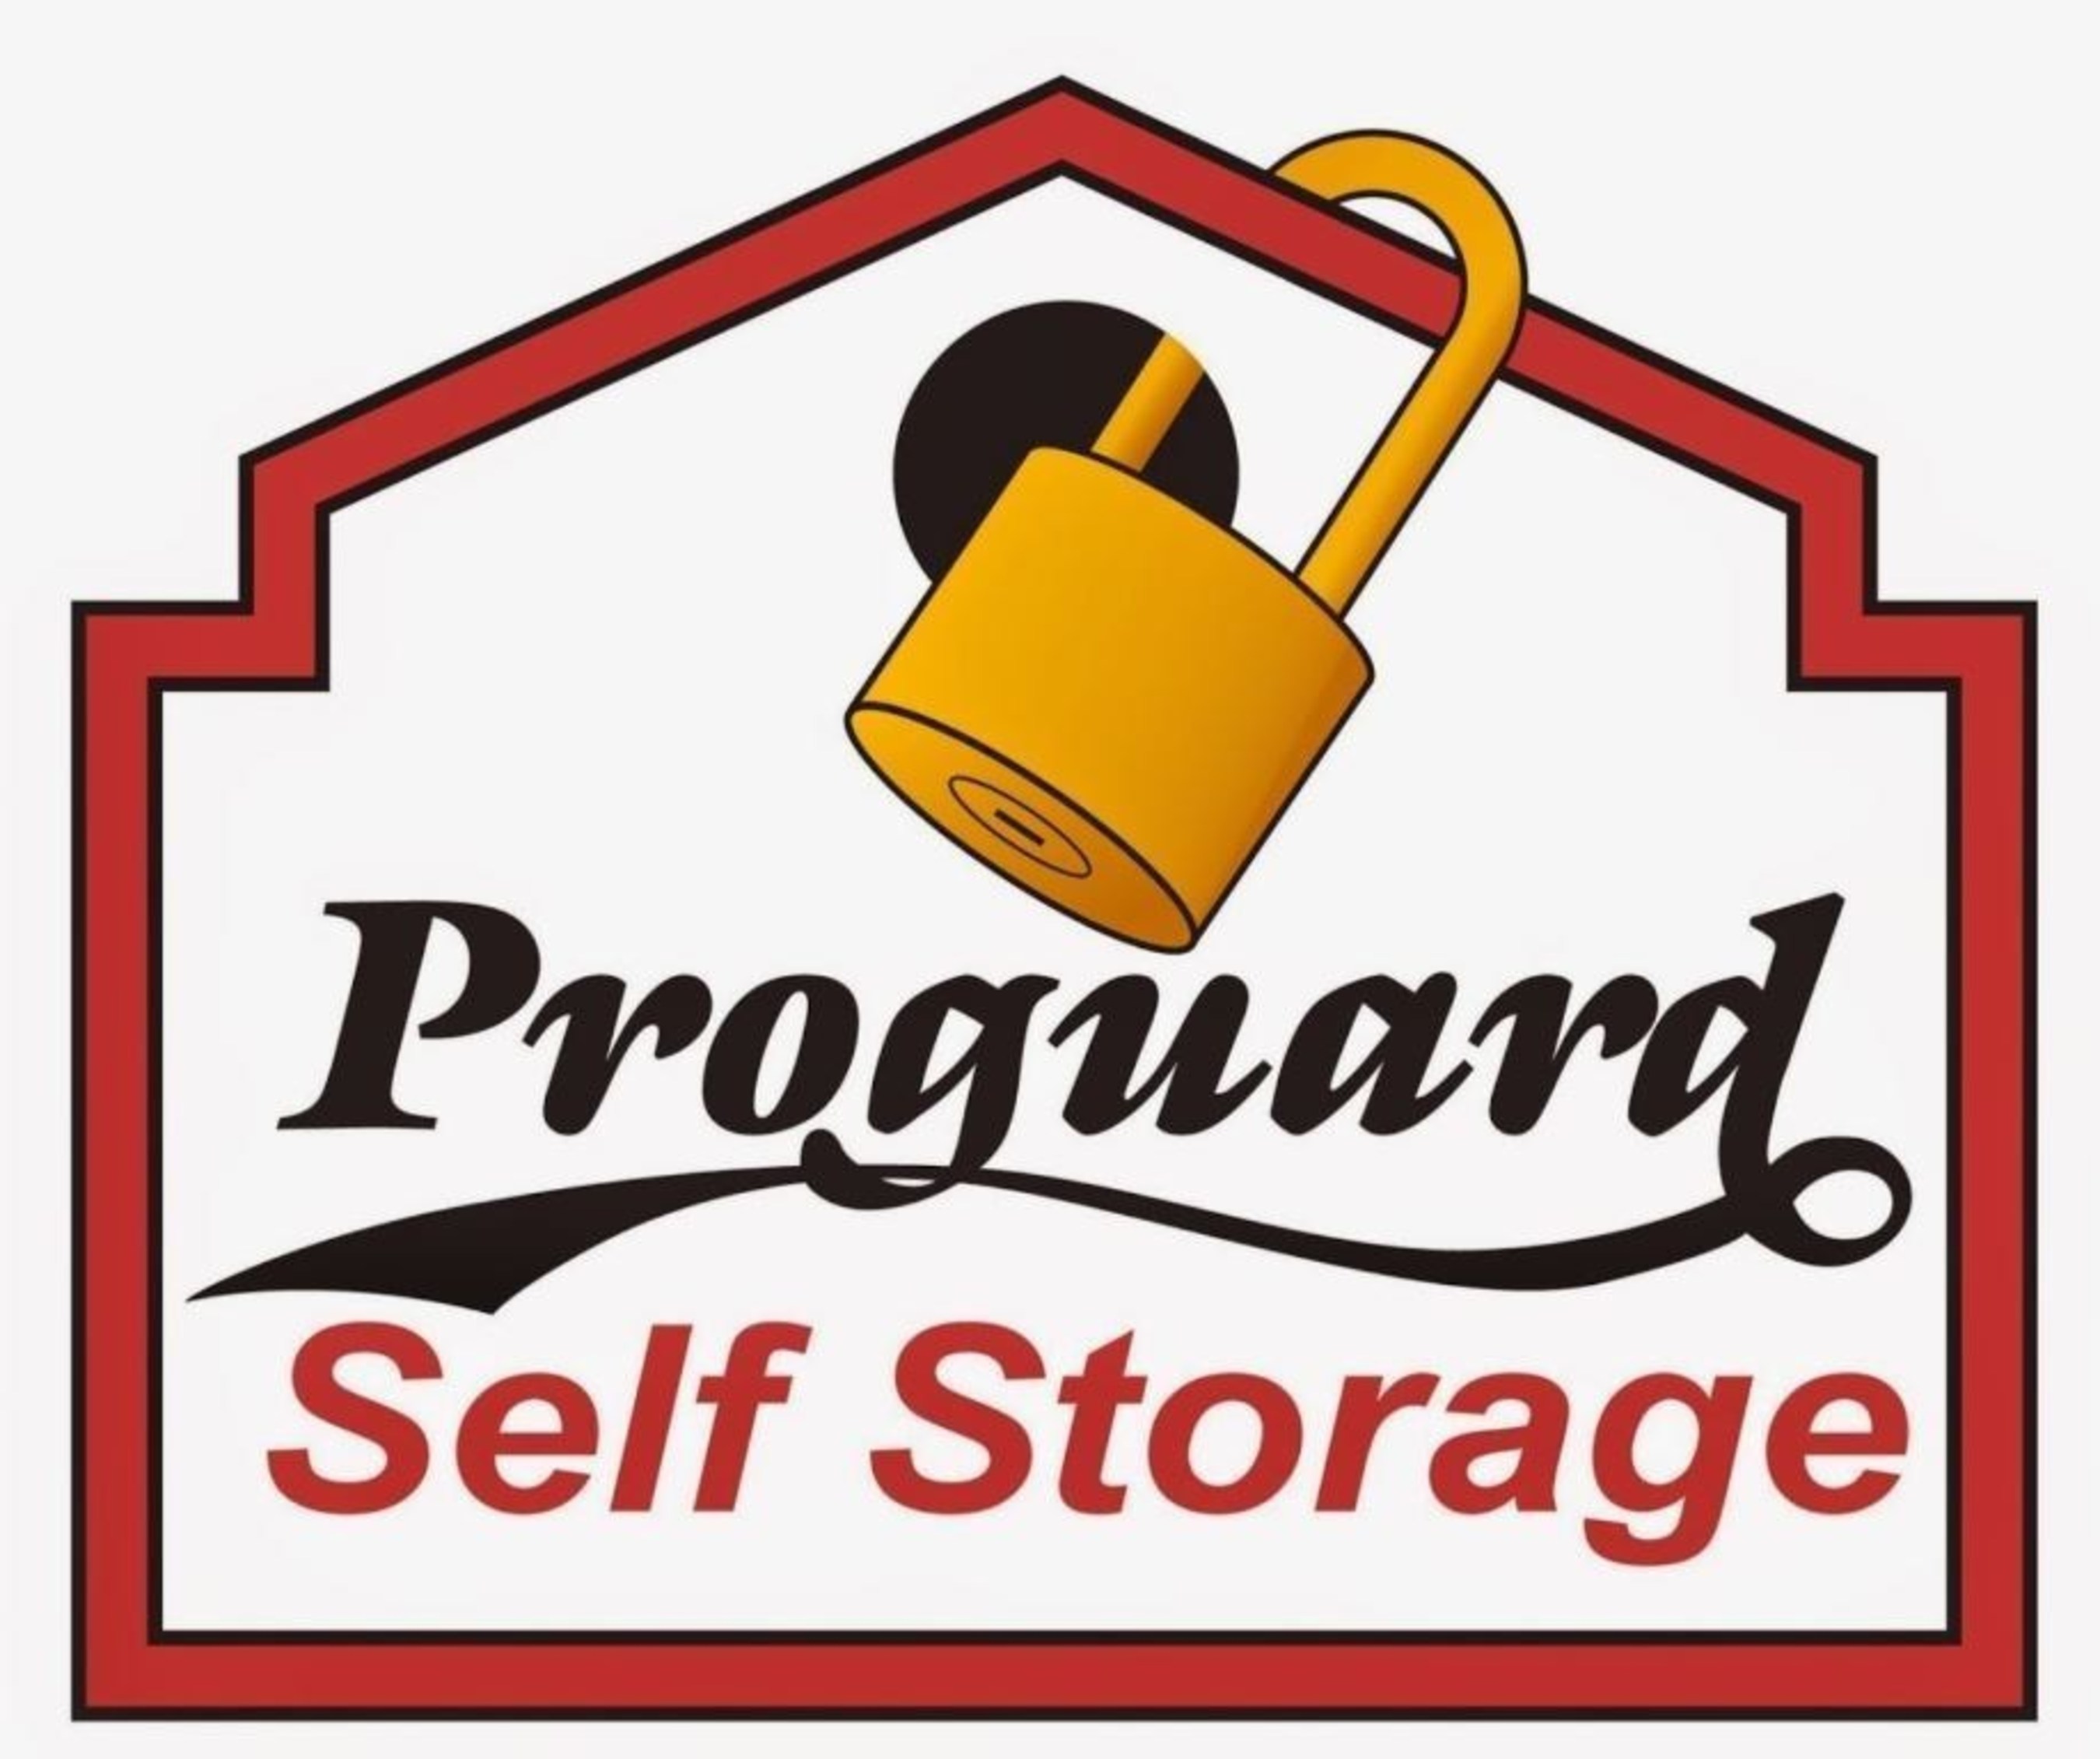 Proguard Self Storage